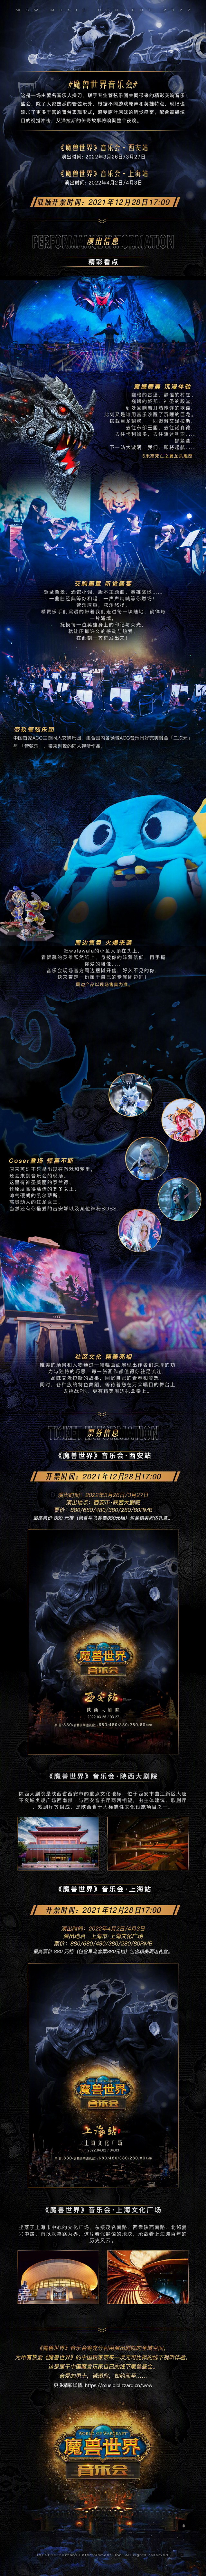 《魔兽世界》音乐会全国巡演即将开始 首发站西安上海